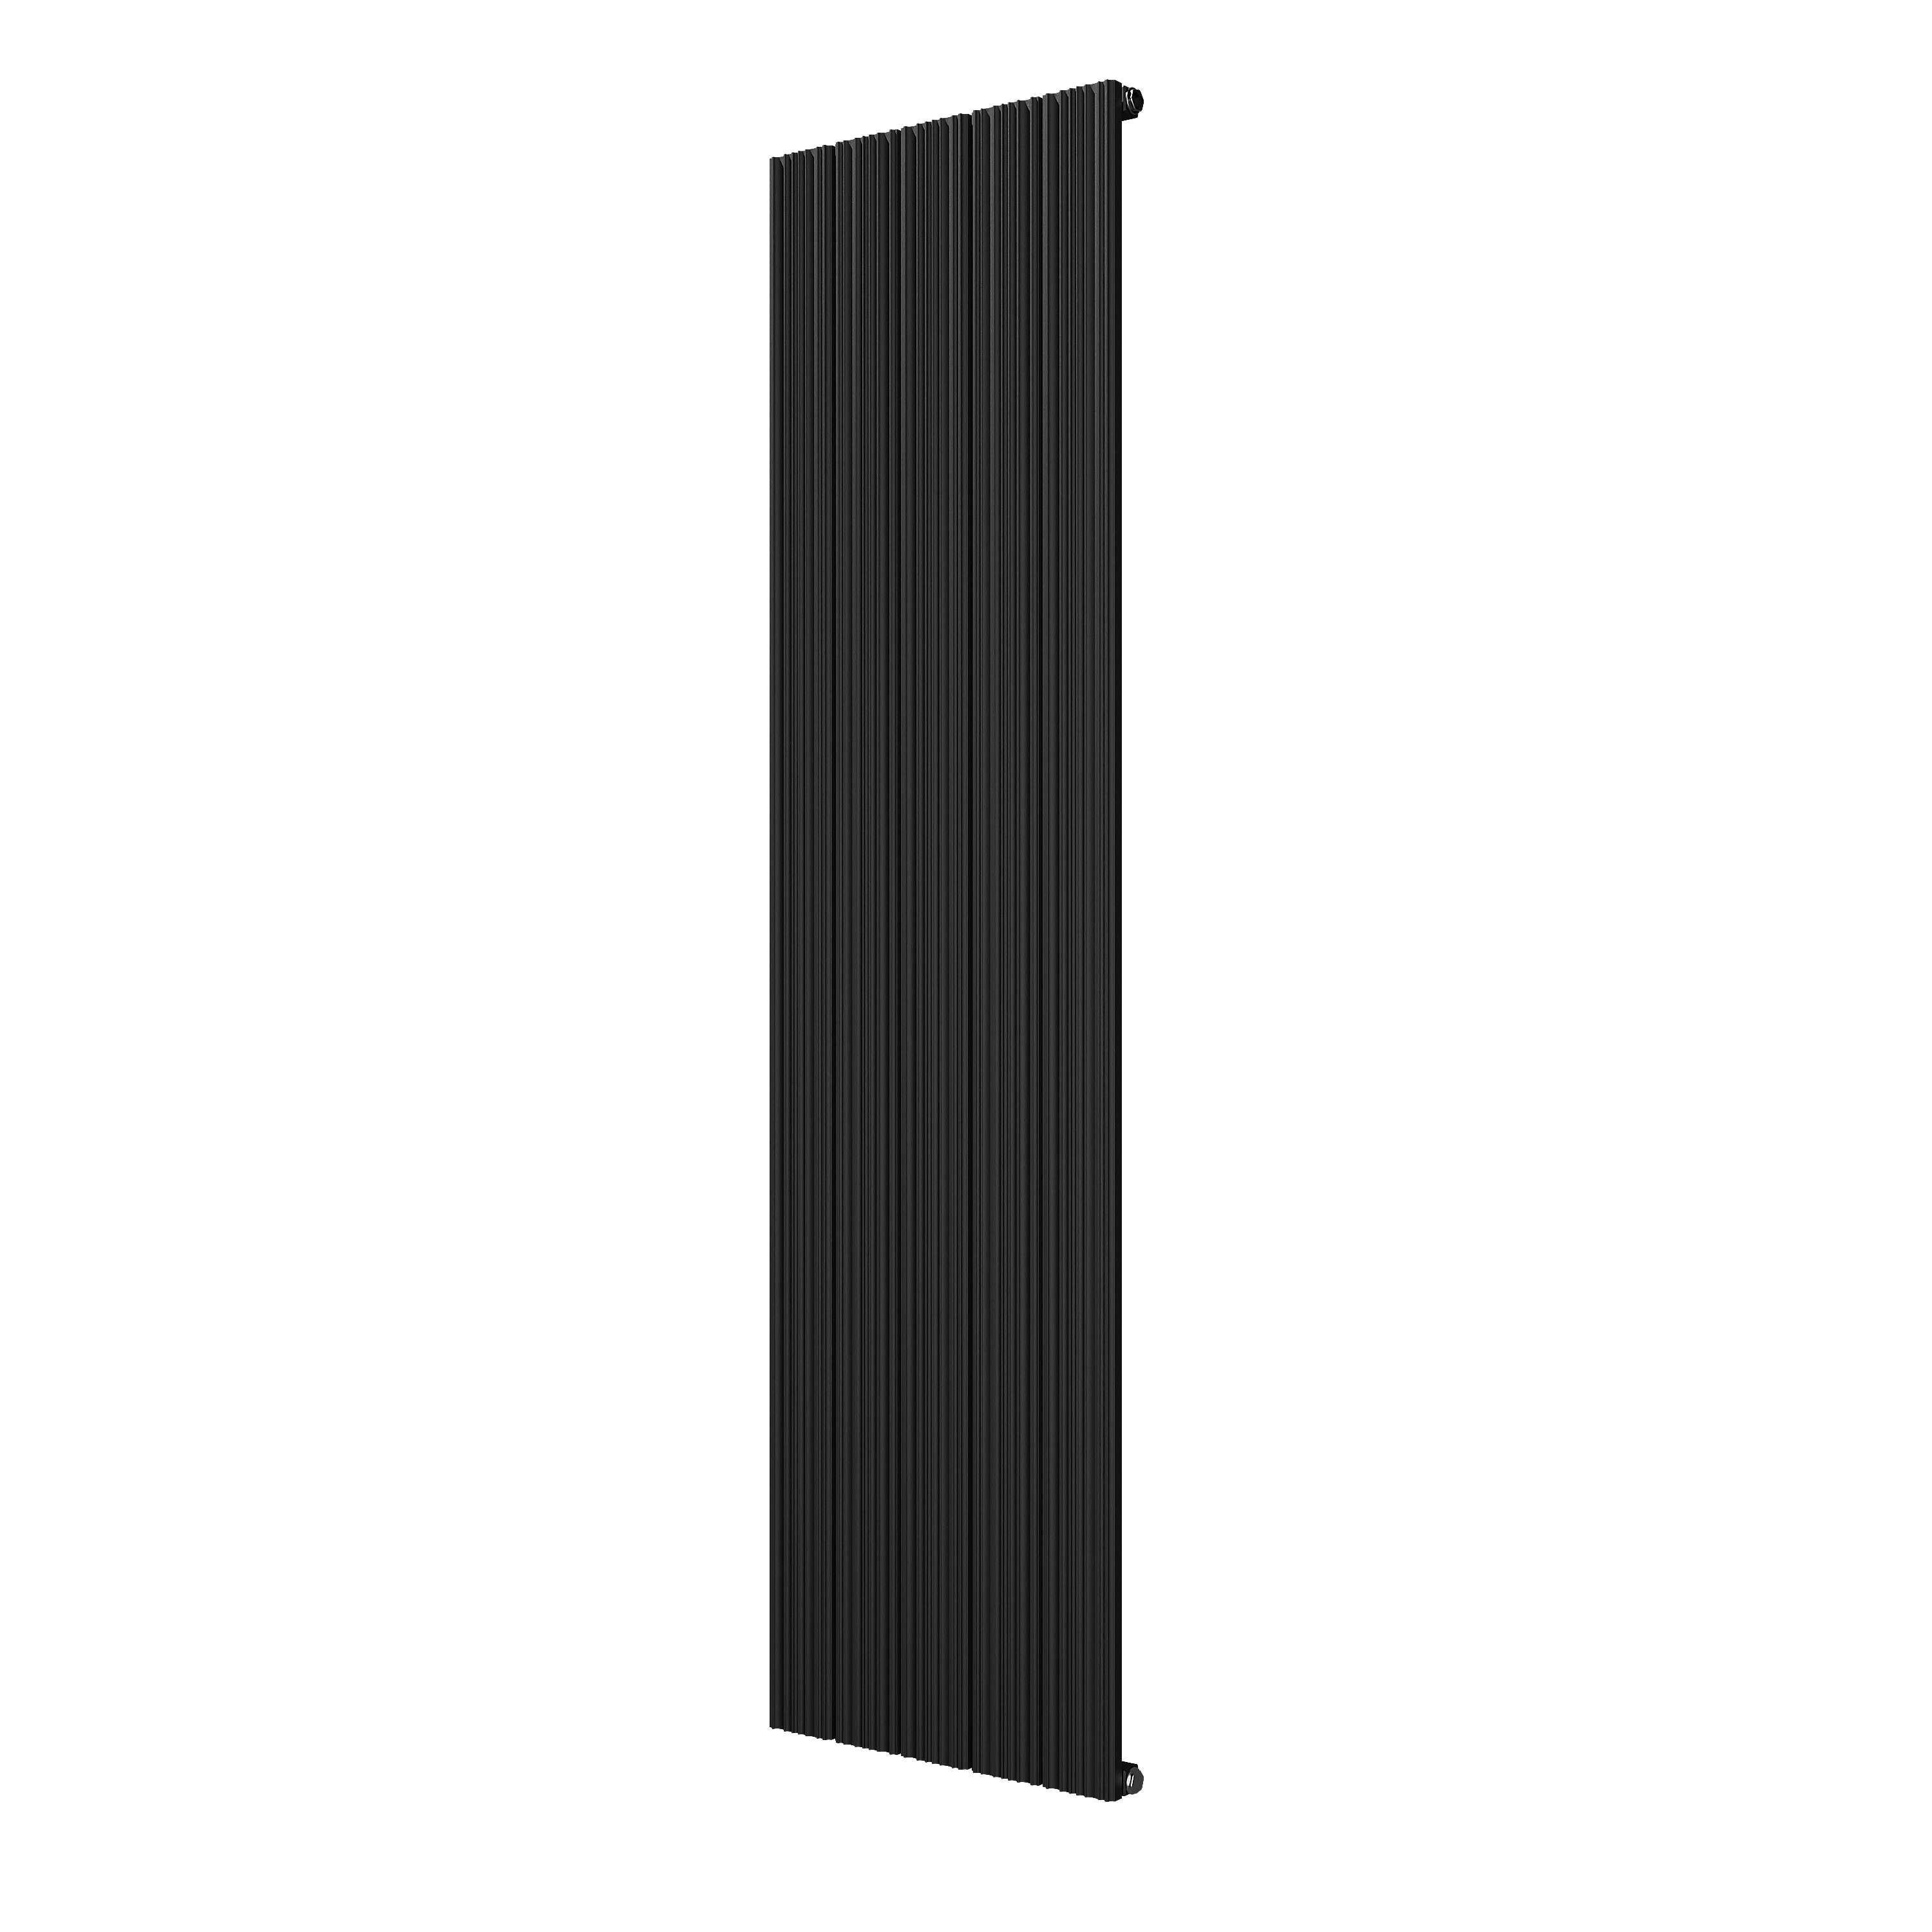 VIPERA Mares enkele handdoekradiator 47 x 180 cm centrale verwarming mat zwart zij- en middenaansluiting 1,099W